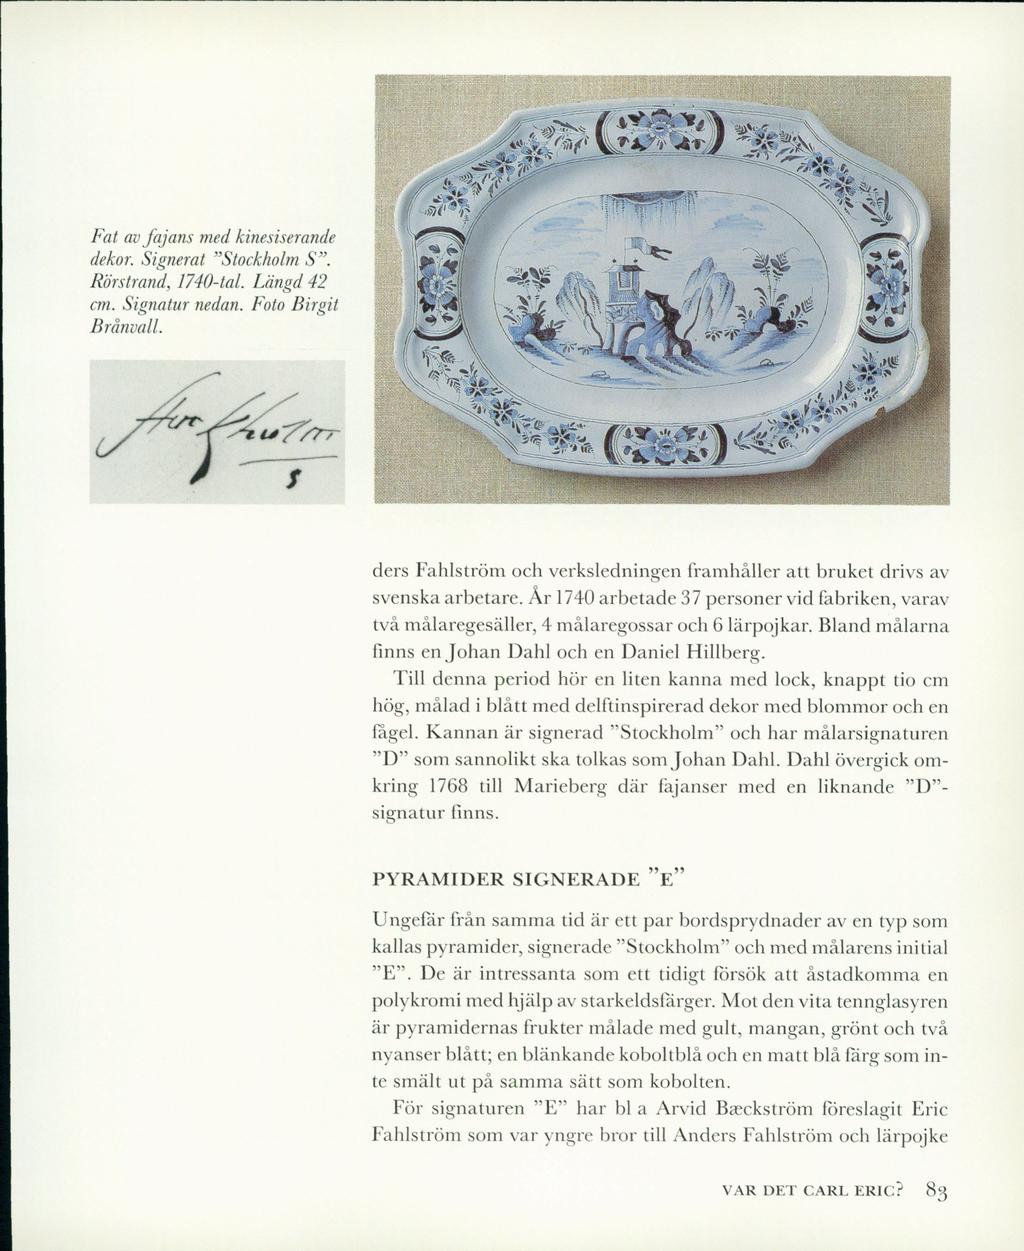 Fat av fajans med kinesiserande dekor. Signerat Stockholm S. Rörstrand, 1740-tal. Längd 42 cm. Signatur nedan. Foto Birgit Brånvall.